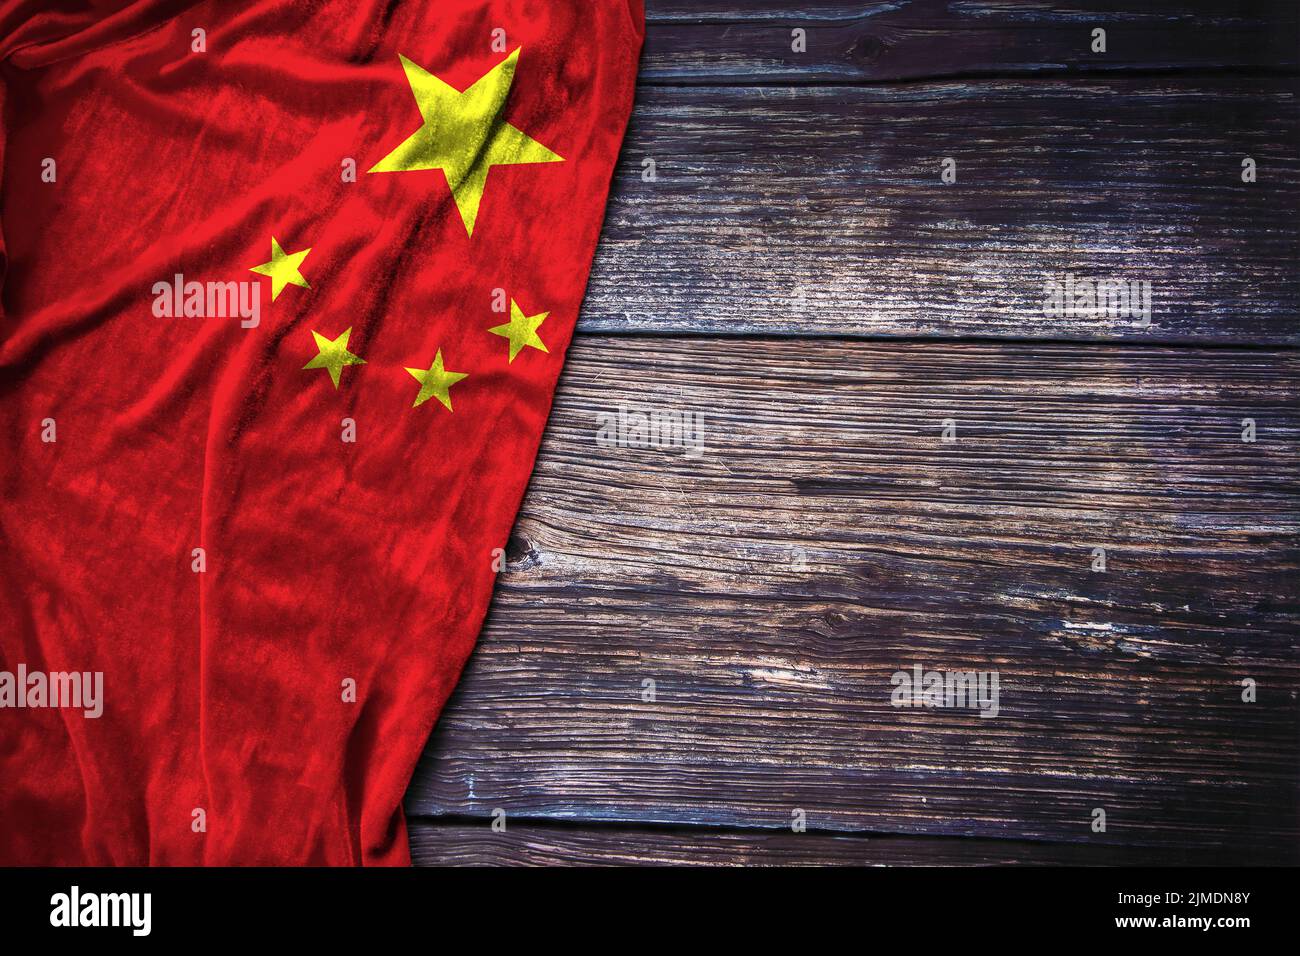 Bandera china sobre fondo rústico de madera para el concepto de Día de los Mártires, Día Nacional de China o Día del Trabajo. Foto de stock